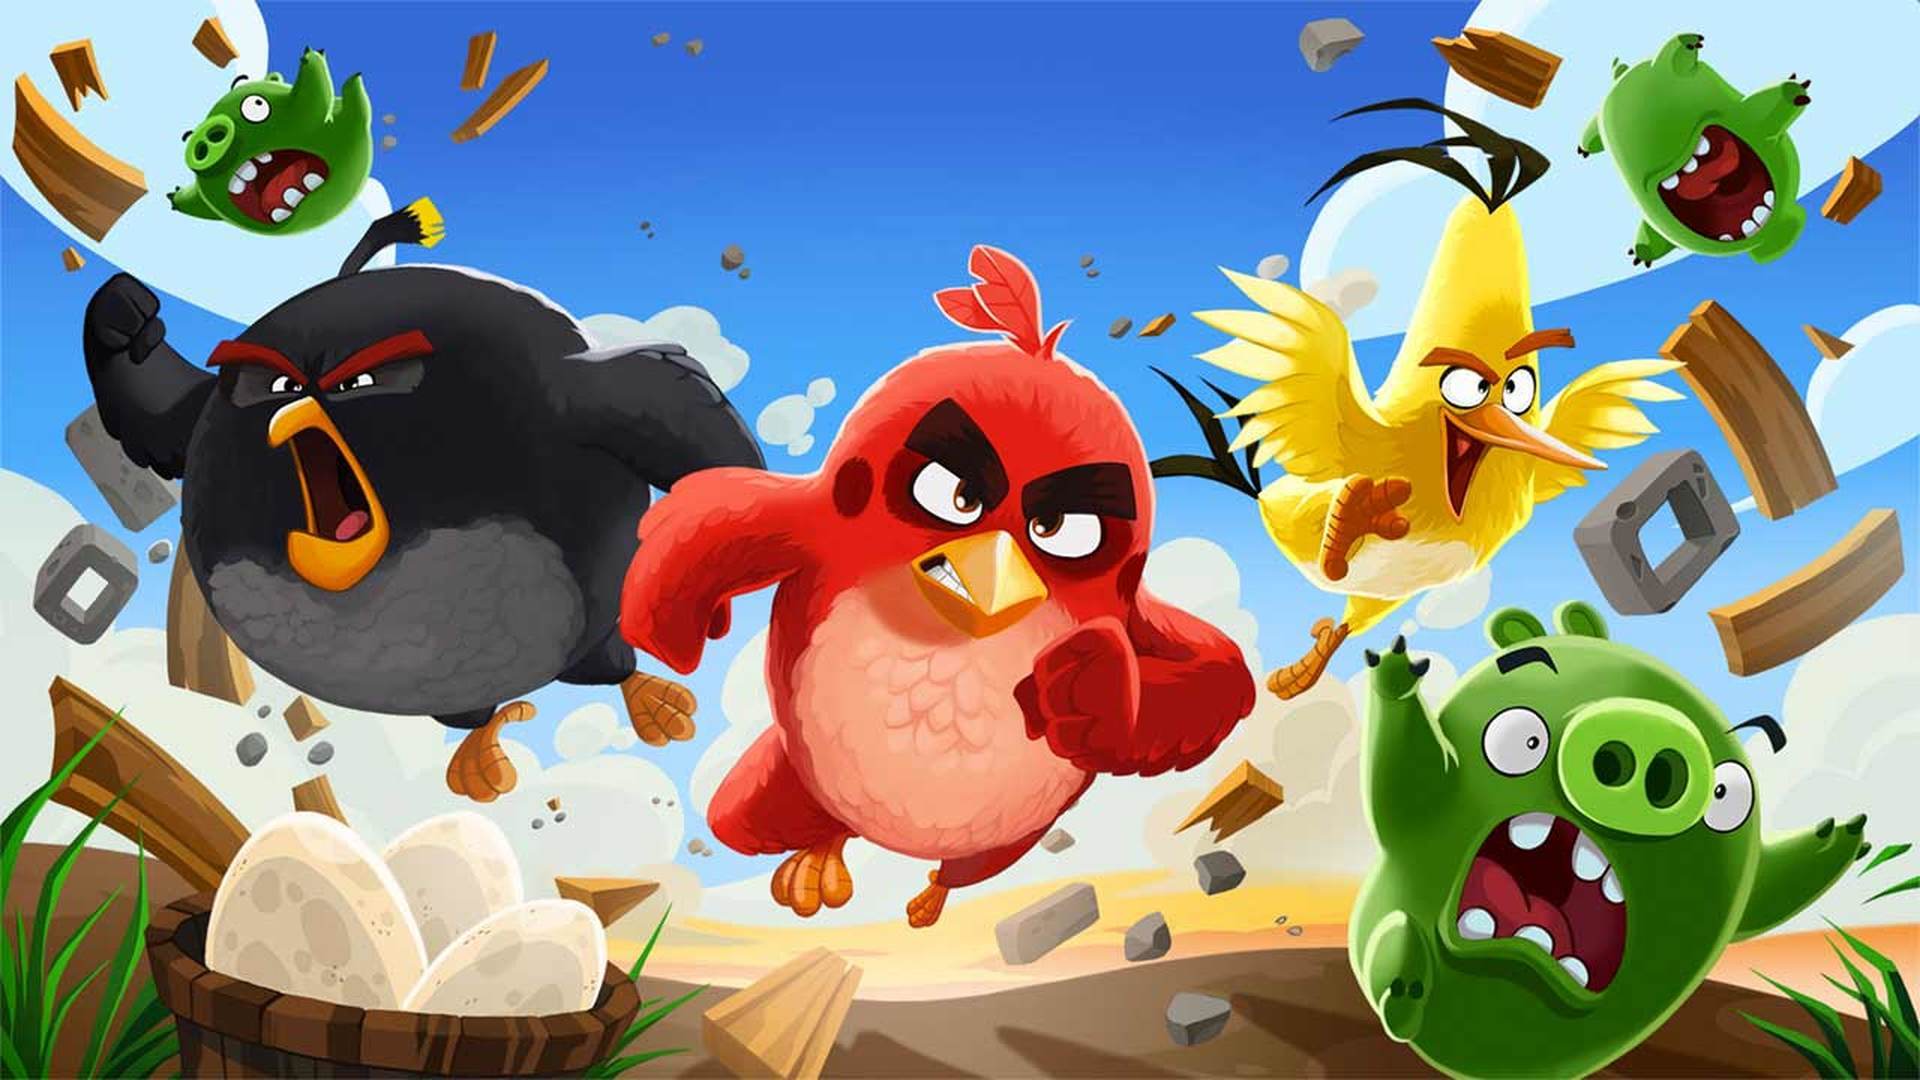 Популярная игра Angry Birds станет сериалом